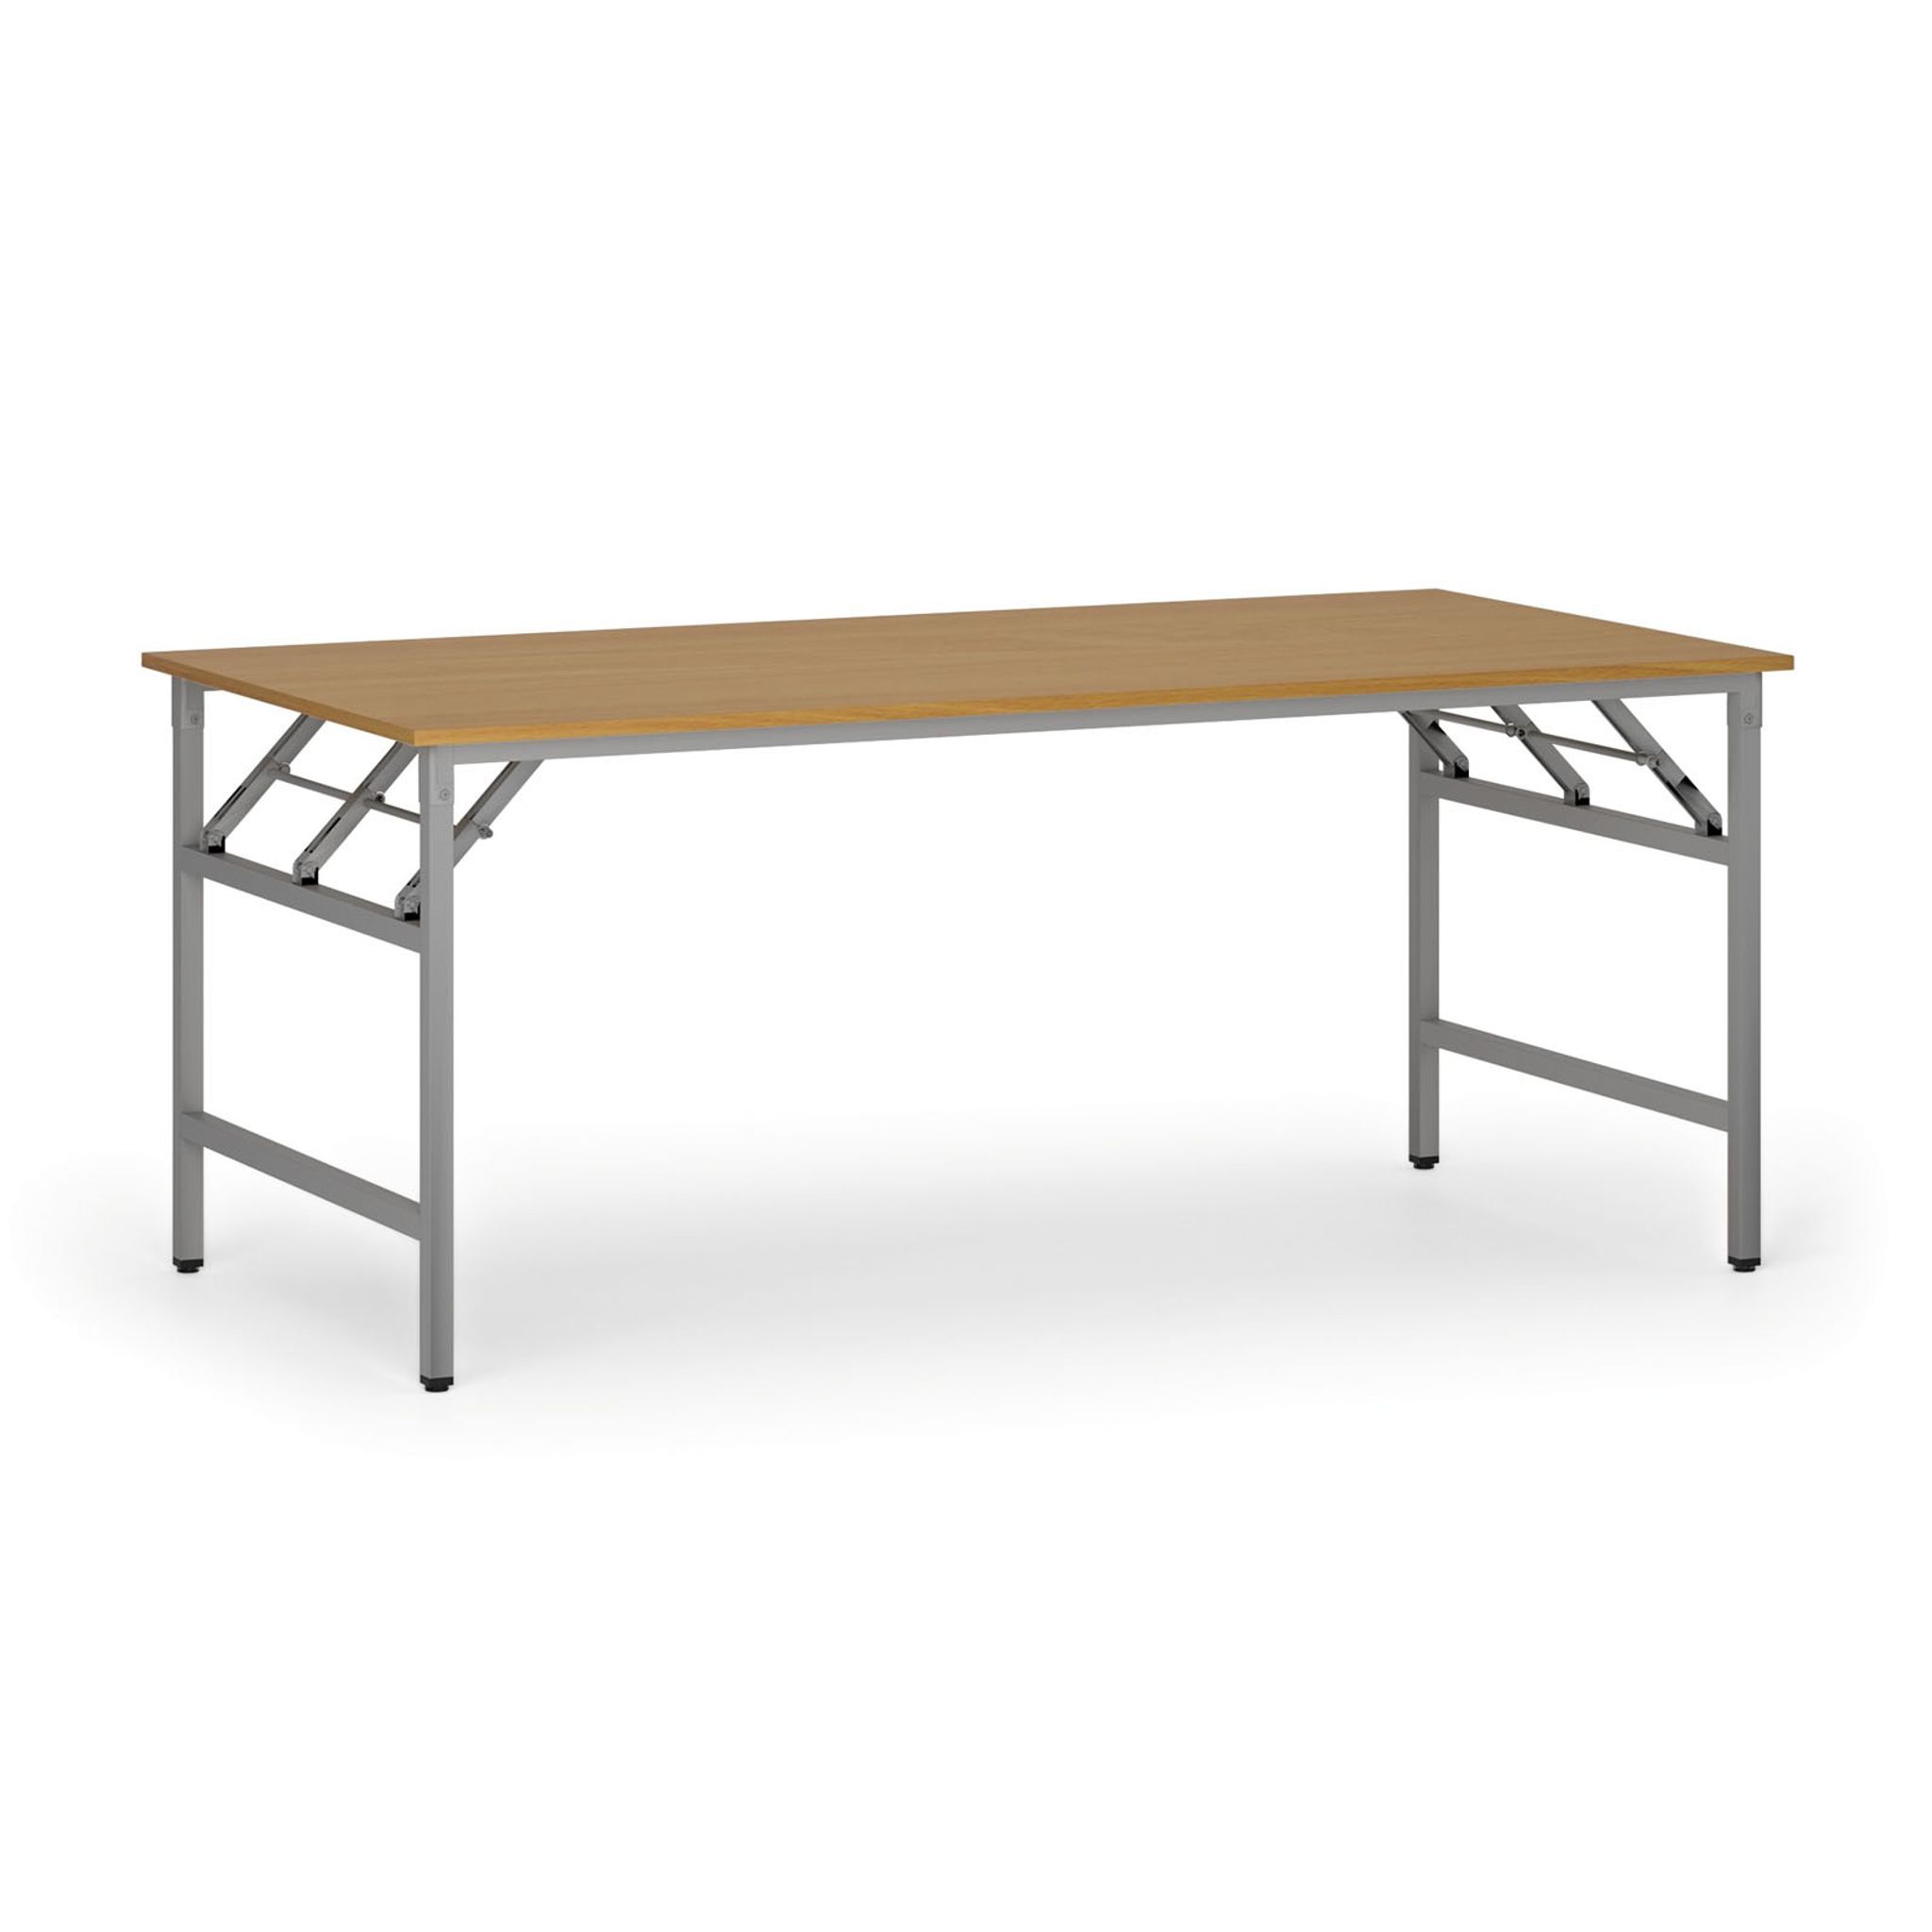 Konferenčný stôl FAST READY so striebornosivou podnožou, 1800 x 900 x 750 mm, buk